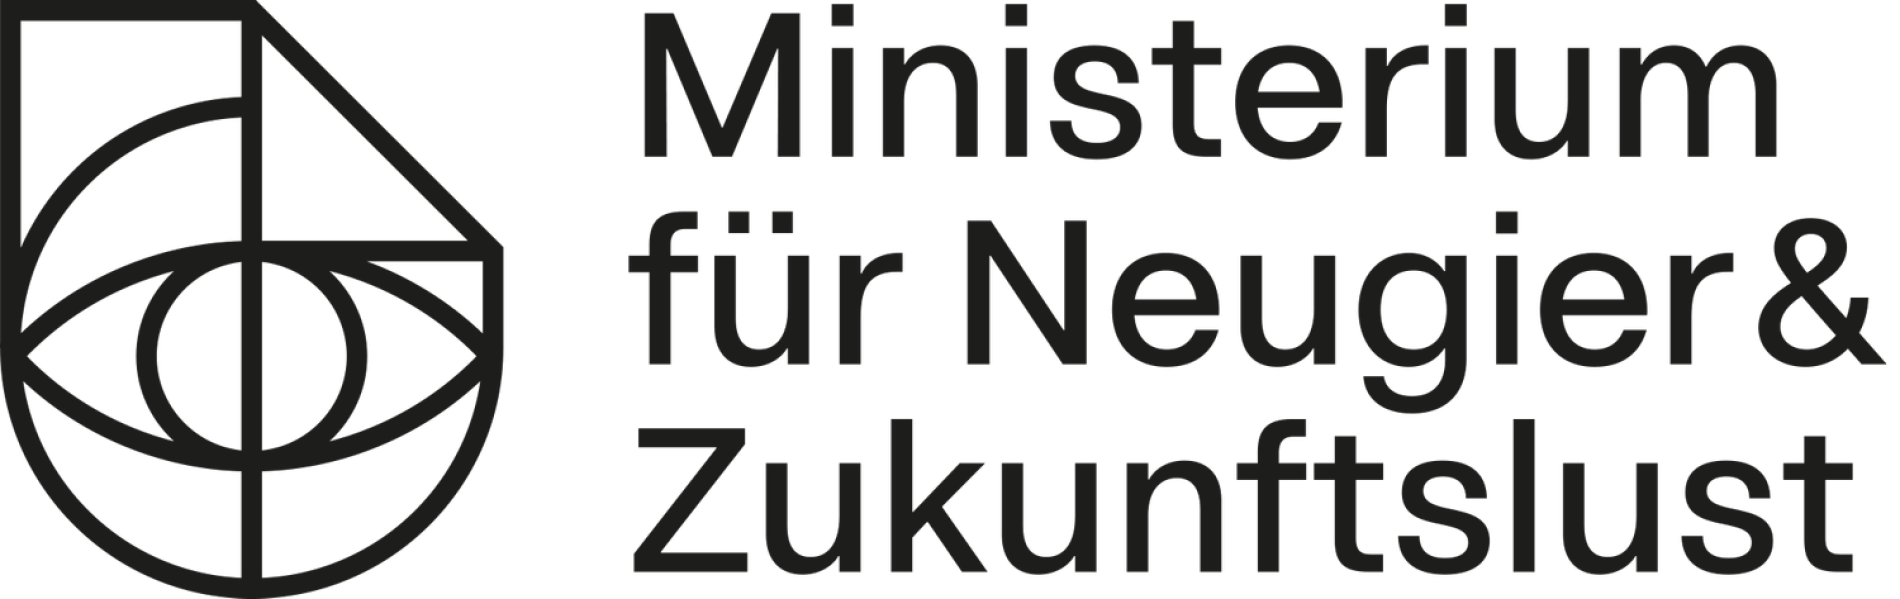 Ministerium fuer Neugier und Zukunftslust Logo grey